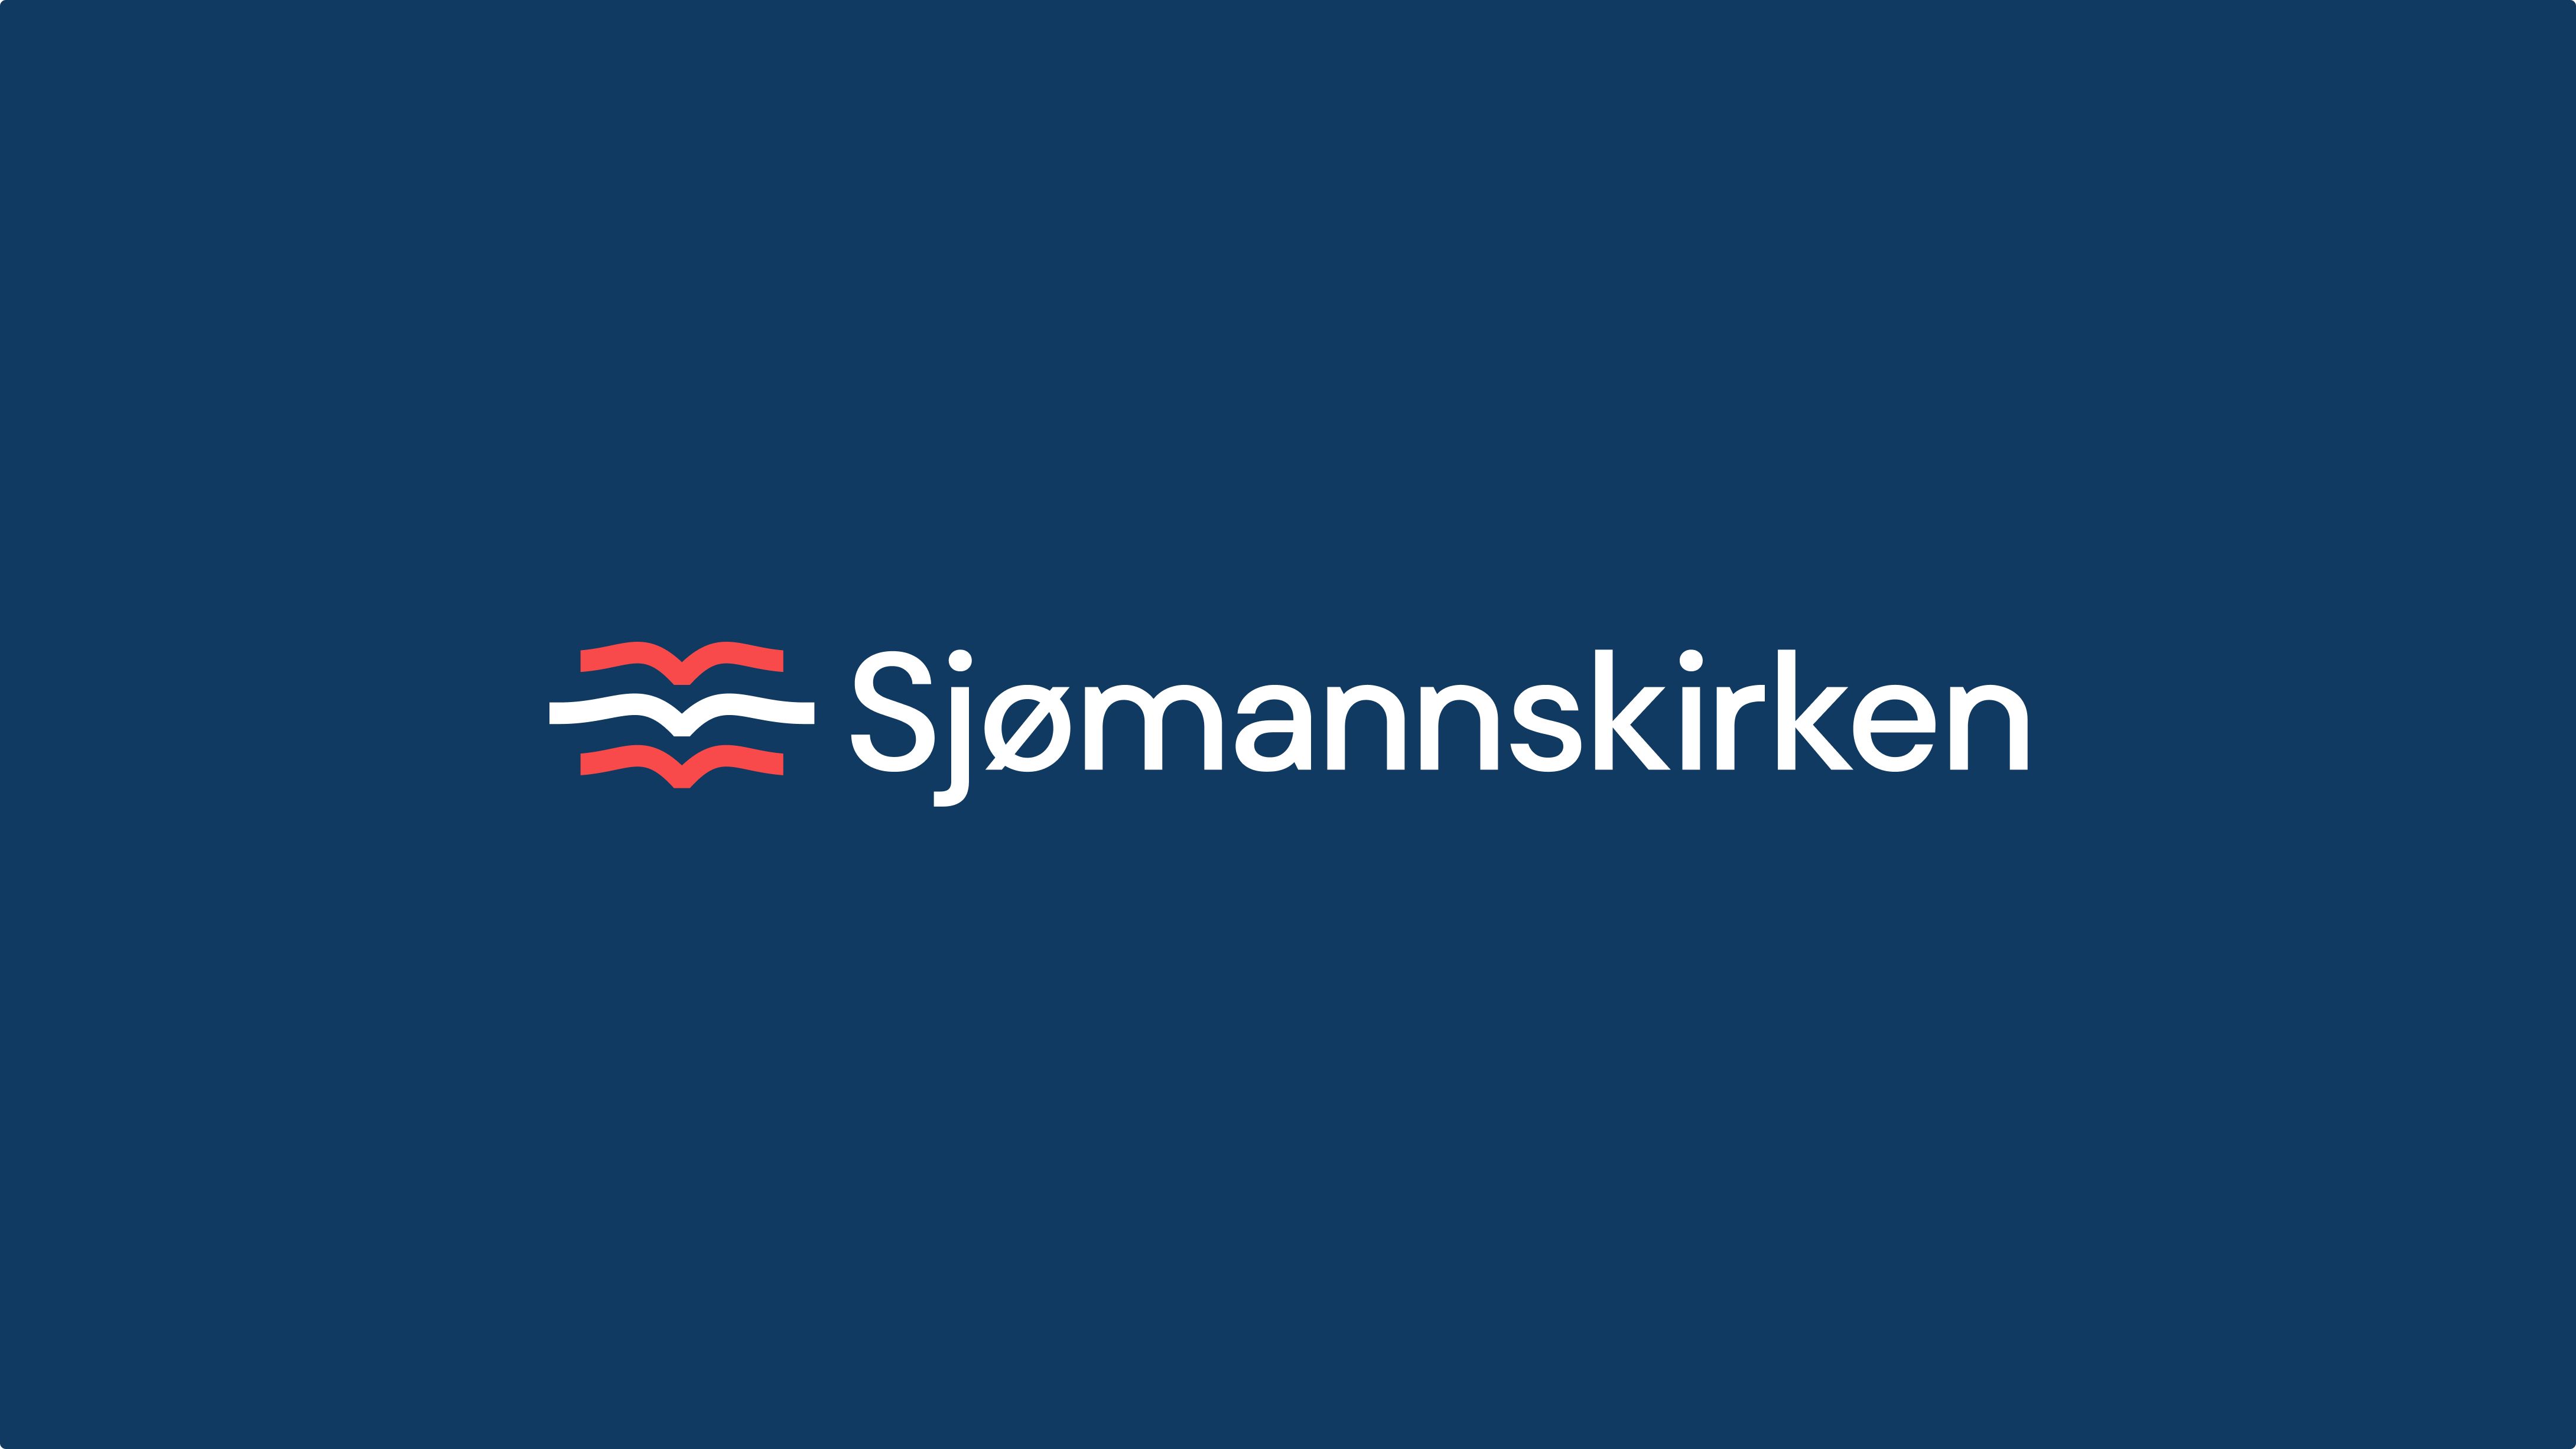 Sjømannskirken white logo on blue background